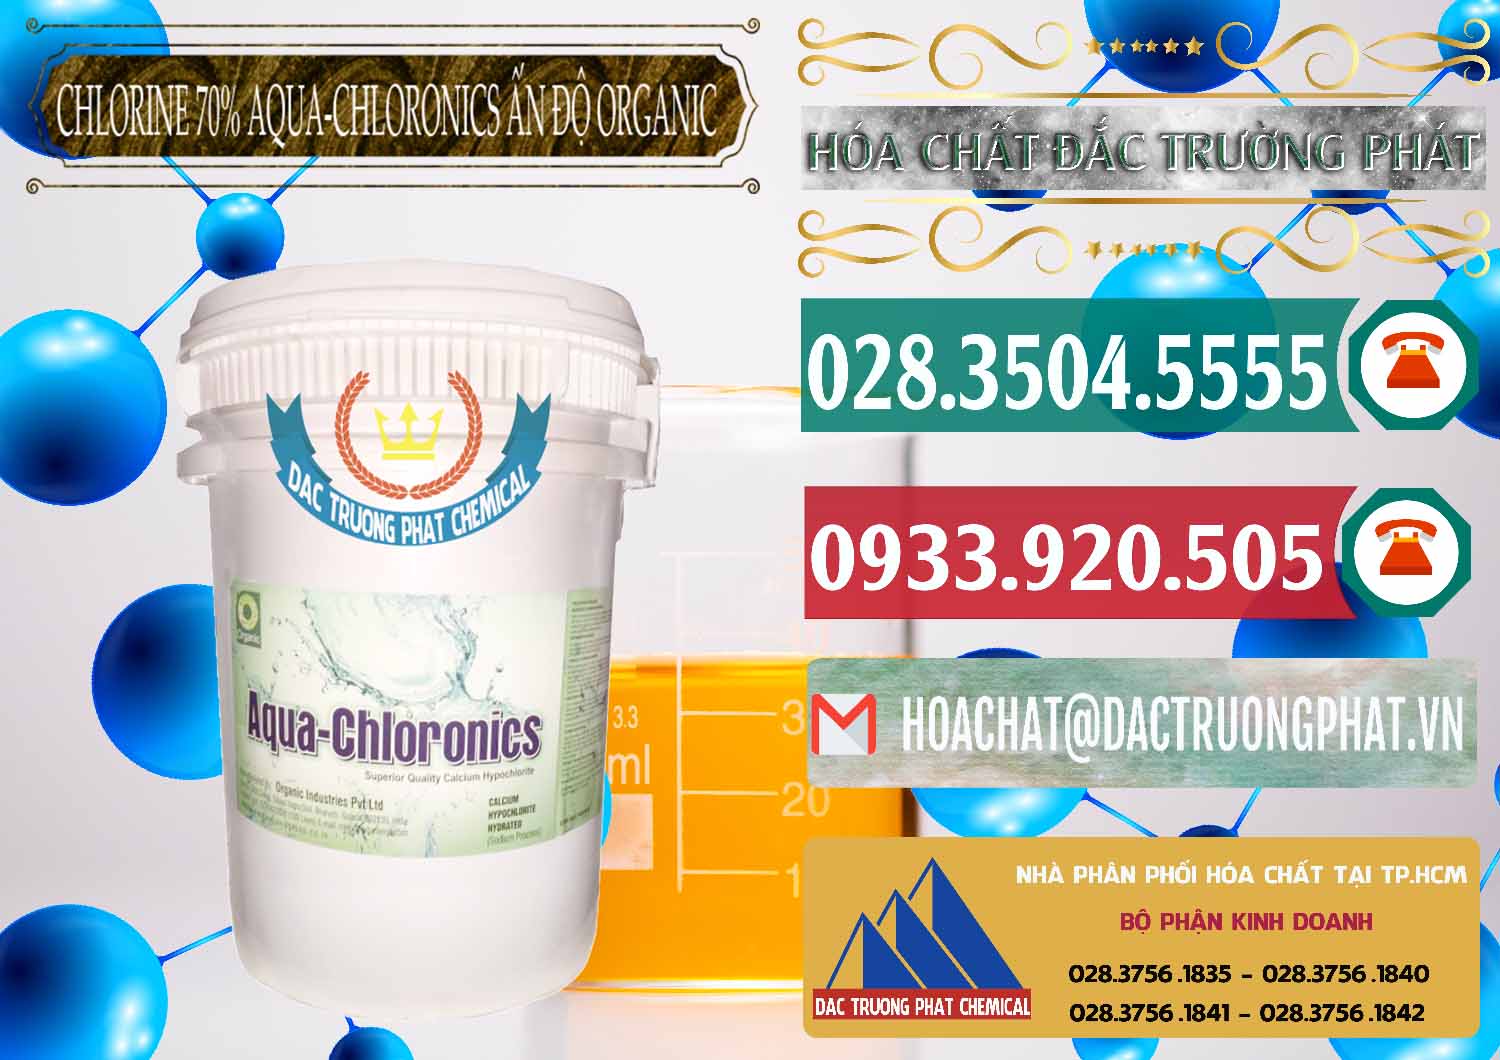 Đơn vị bán và cung cấp Chlorine – Clorin 70% Aqua-Chloronics Ấn Độ Organic India - 0211 - Đơn vị phân phối & cung cấp hóa chất tại TP.HCM - muabanhoachat.vn